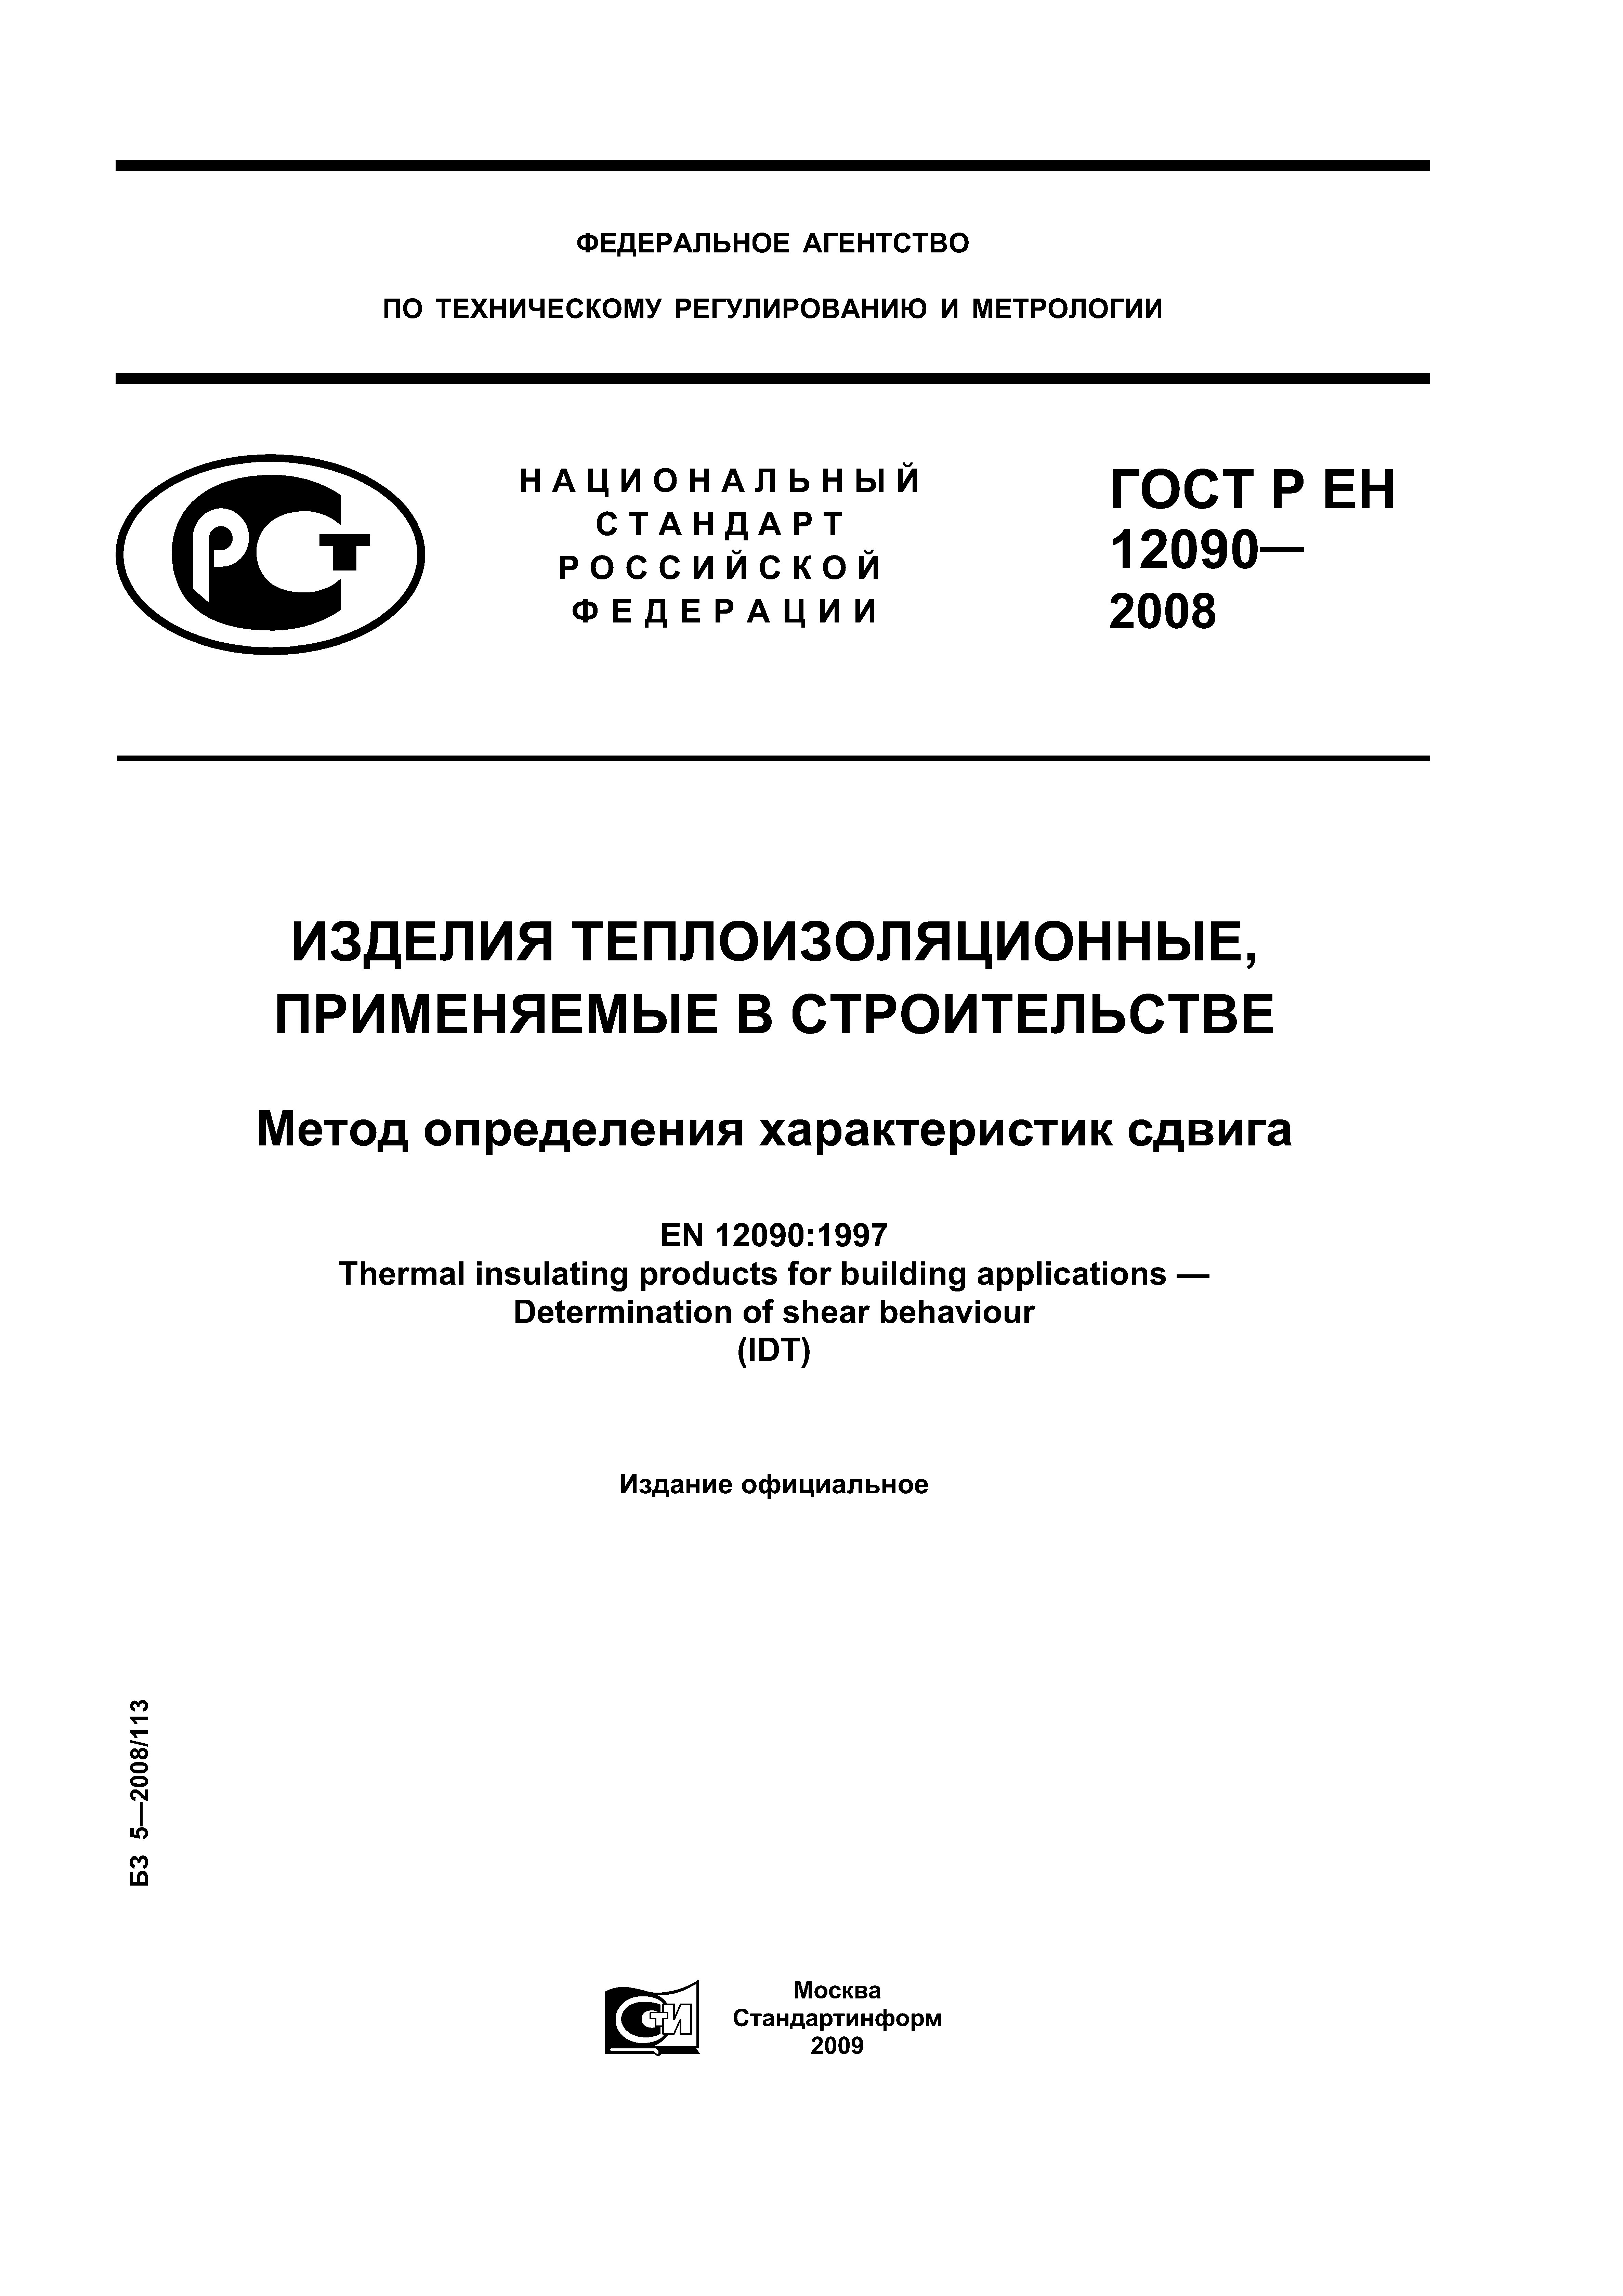 ГОСТ Р ЕН 12090-2008